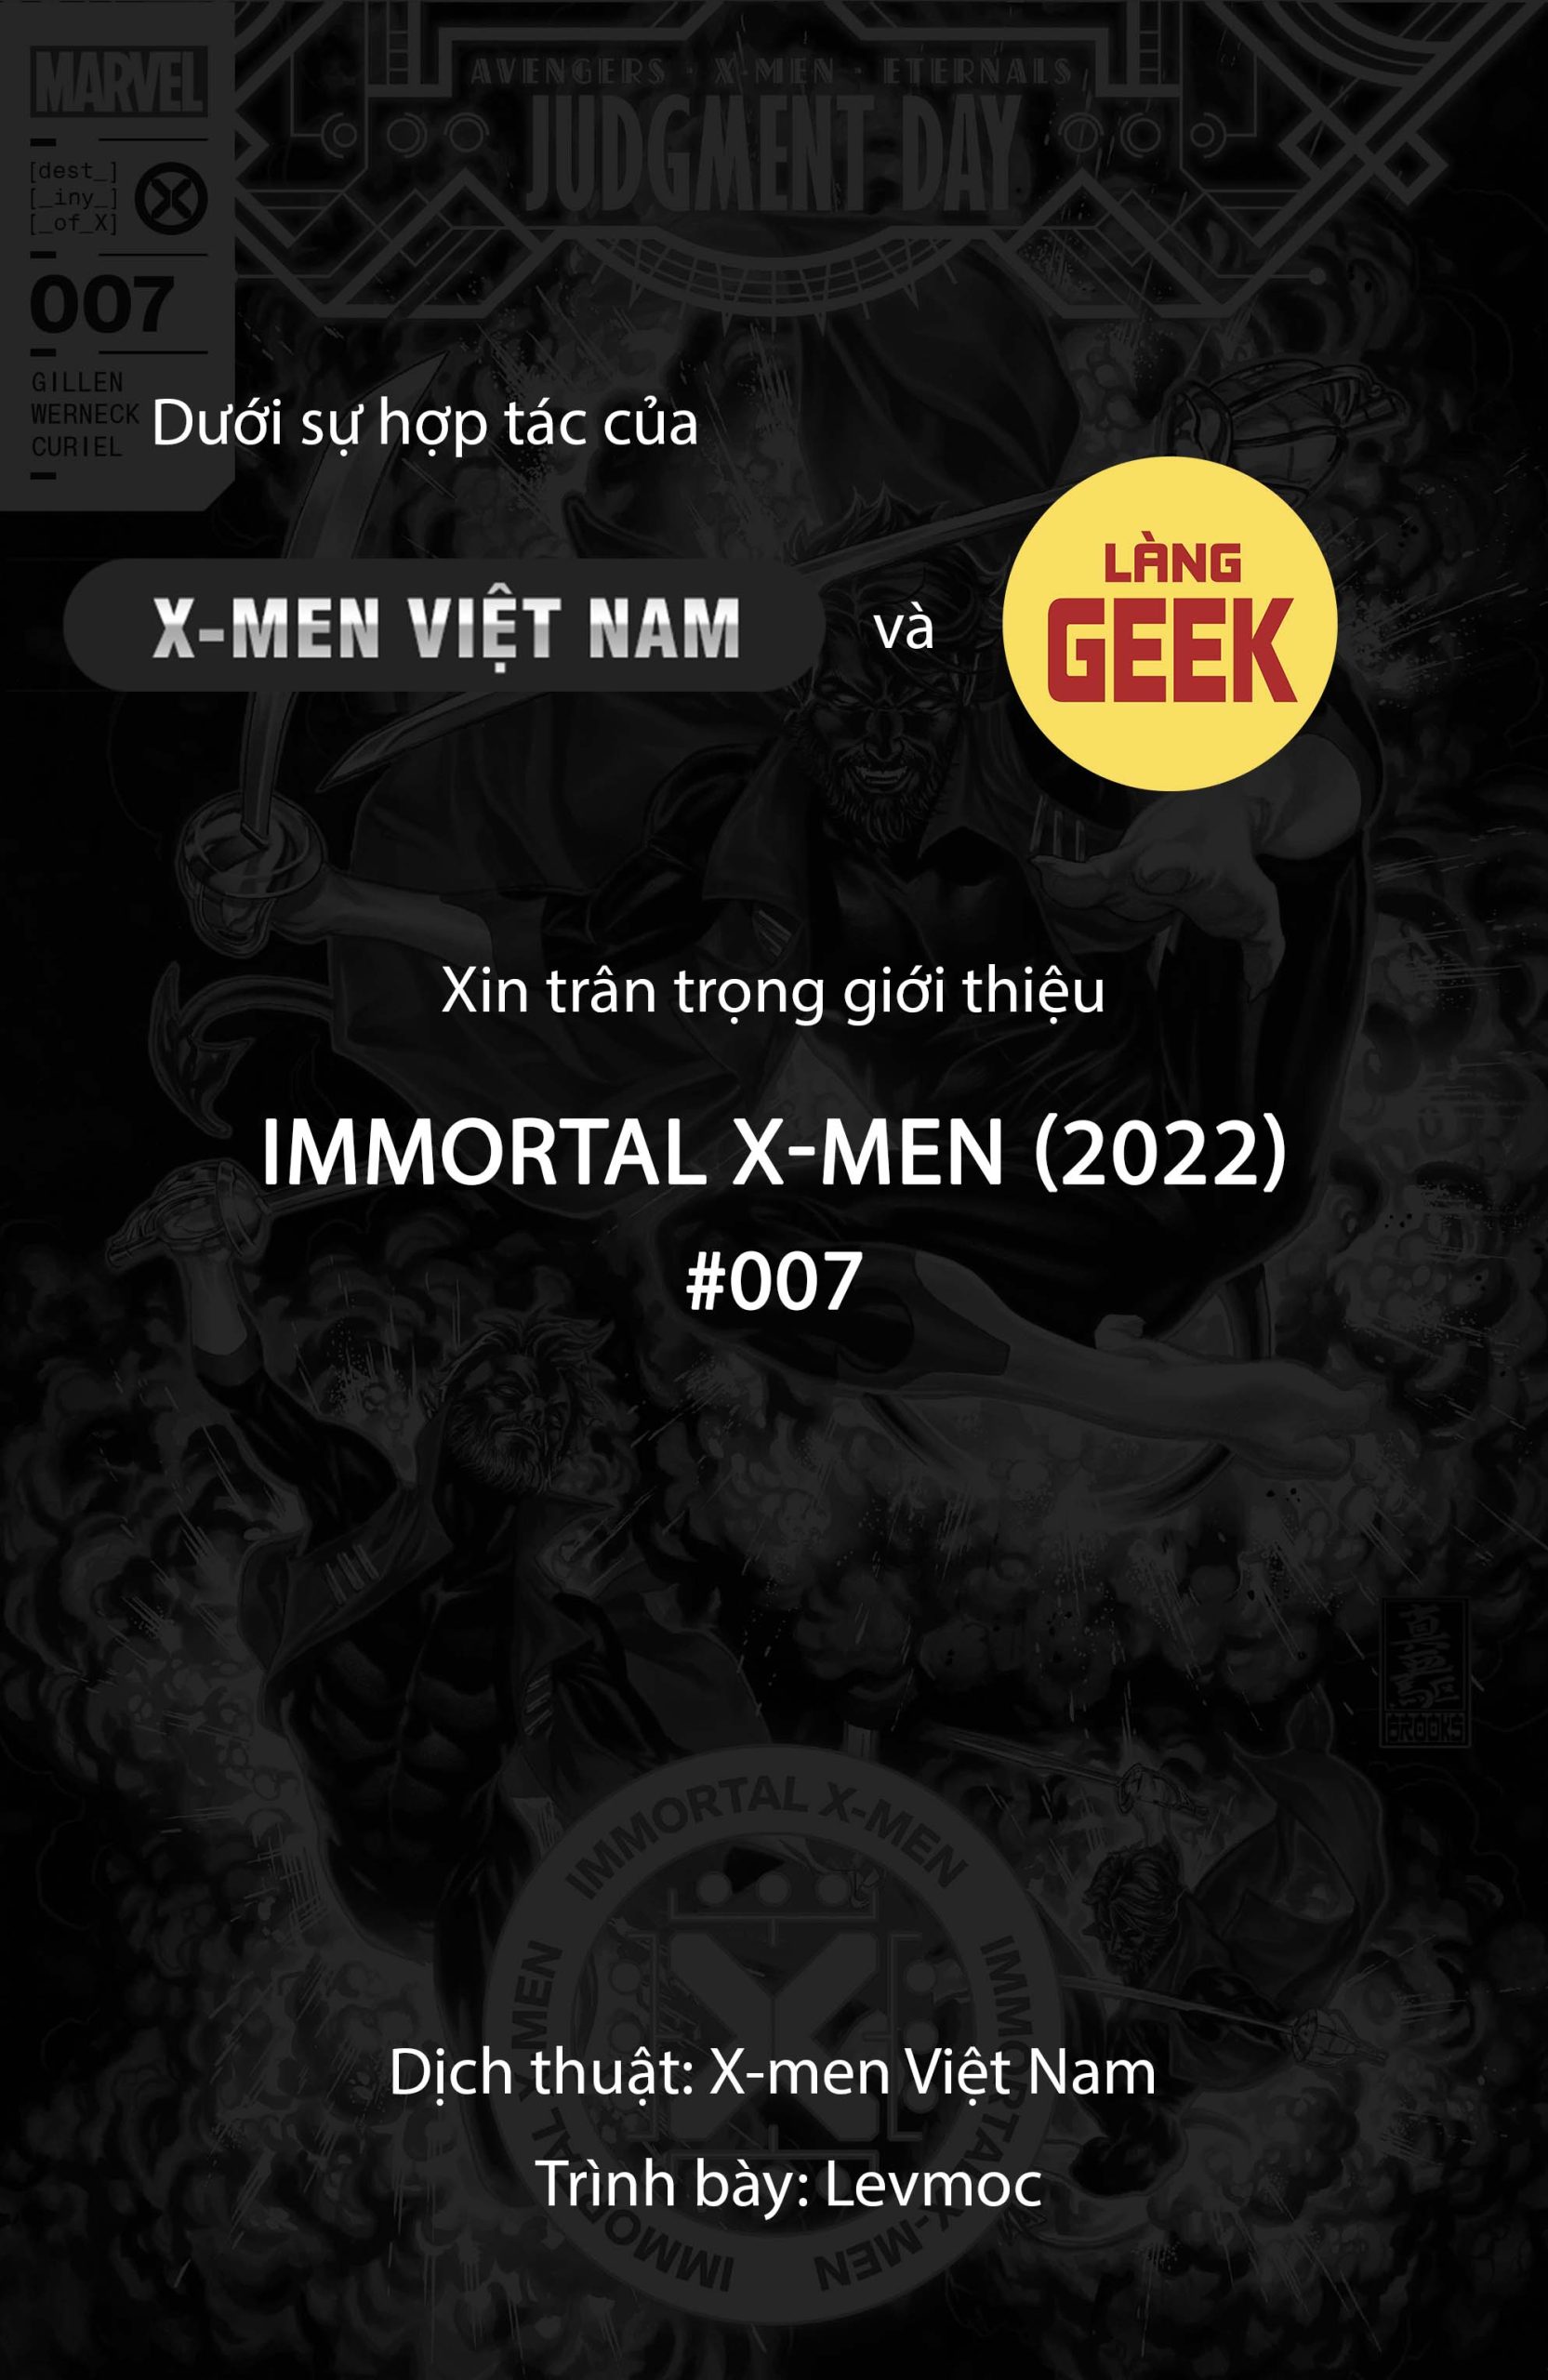 https://langgeek.net/wp-content/webpc-passthru.php?src=https://langgeek.net/wp-content/uploads/2022/10/Immortal-X-Men-2022-007-000-1-scaled.jpg&nocache=1